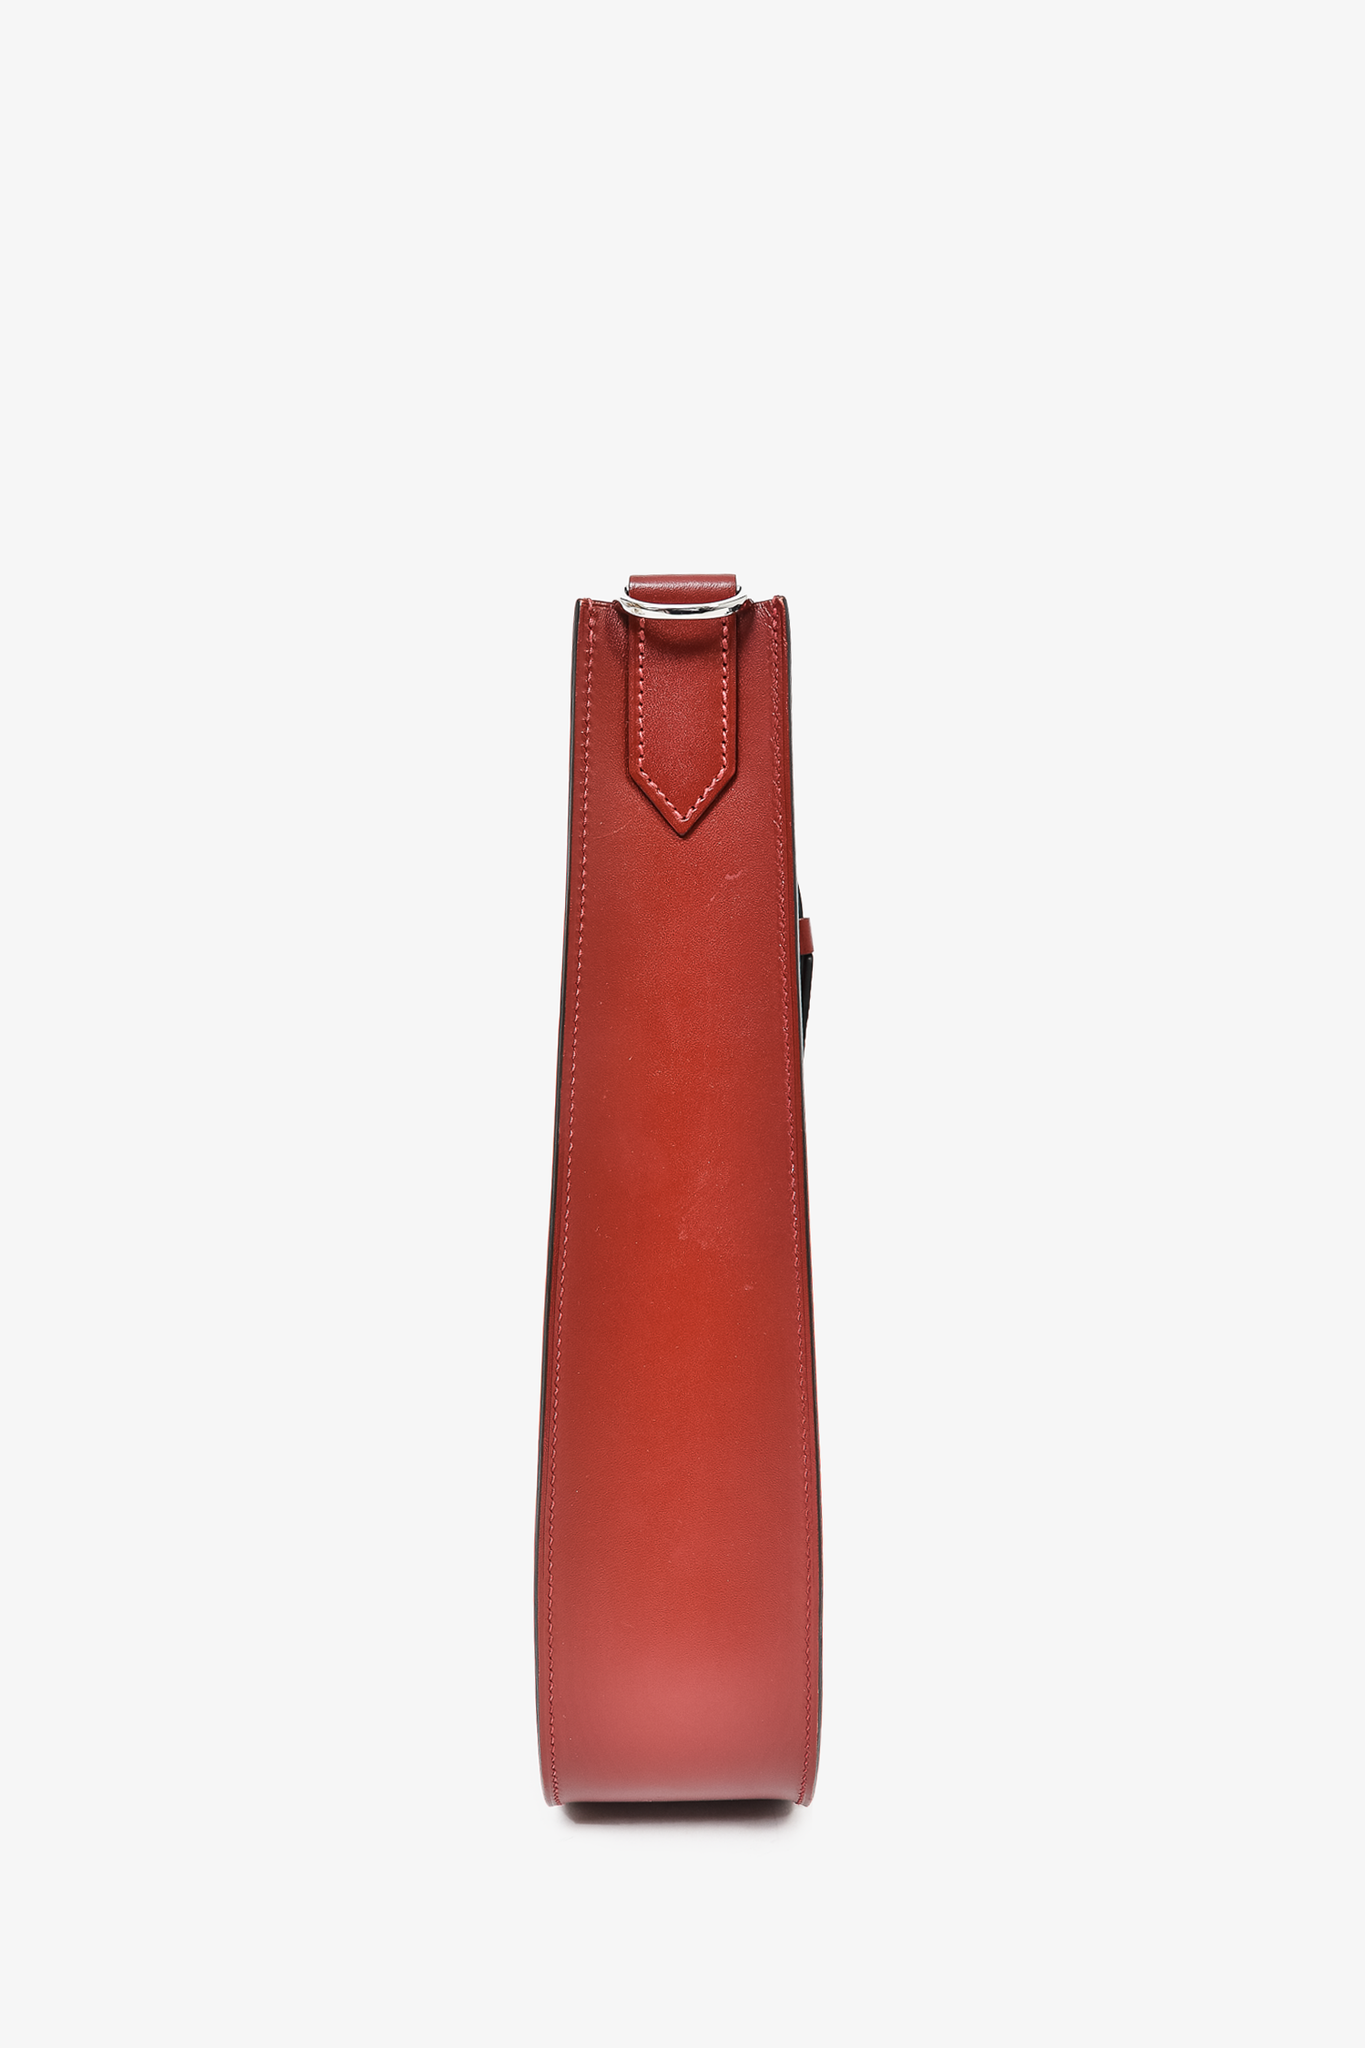 Hermes 2017 Burgundy Red Hunter Leather Evelyne Sellier 29 Messenger Bag